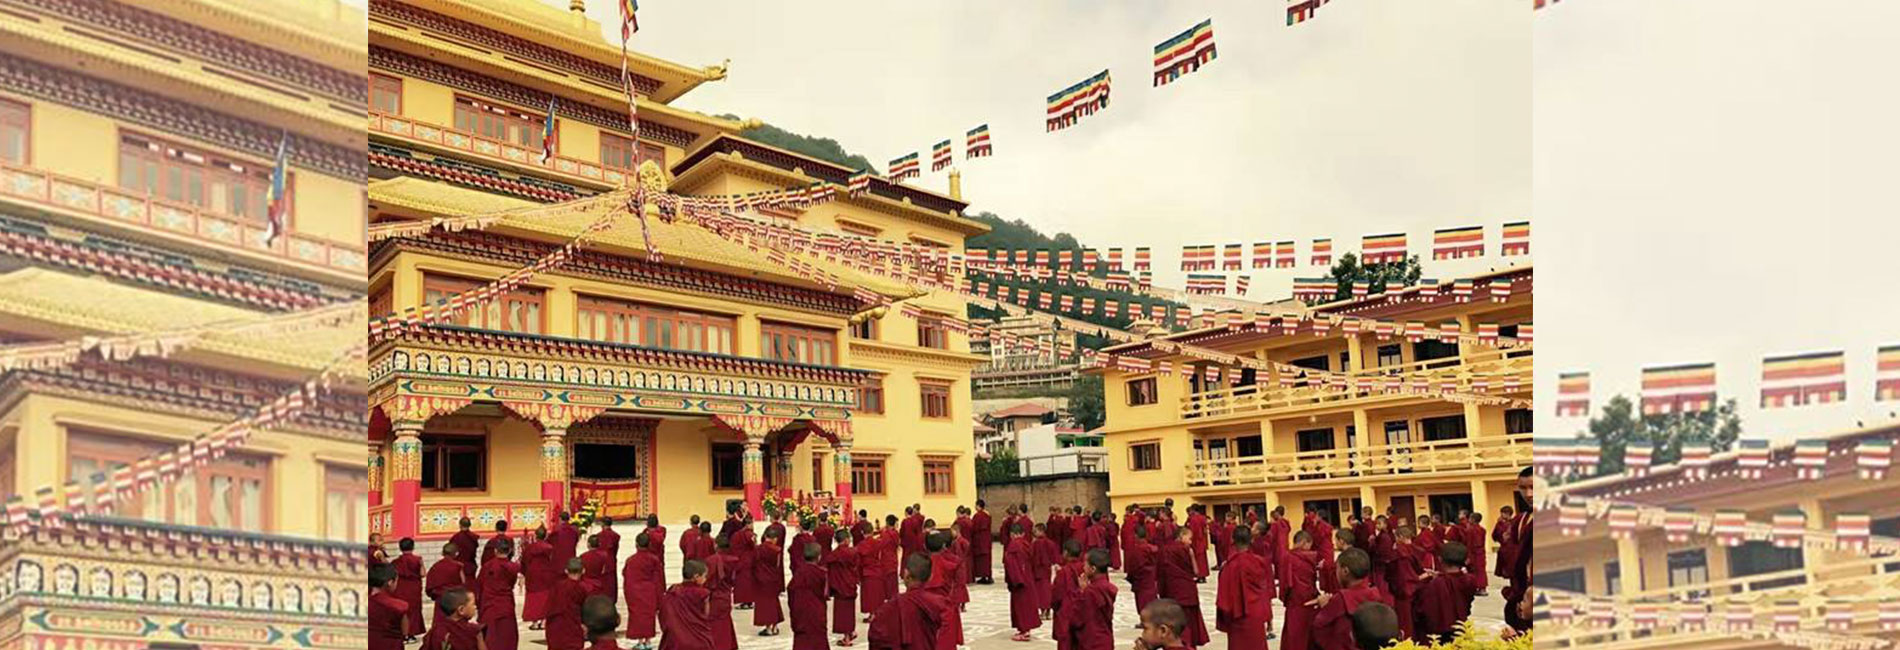 尼泊爾圓滿法洲寺